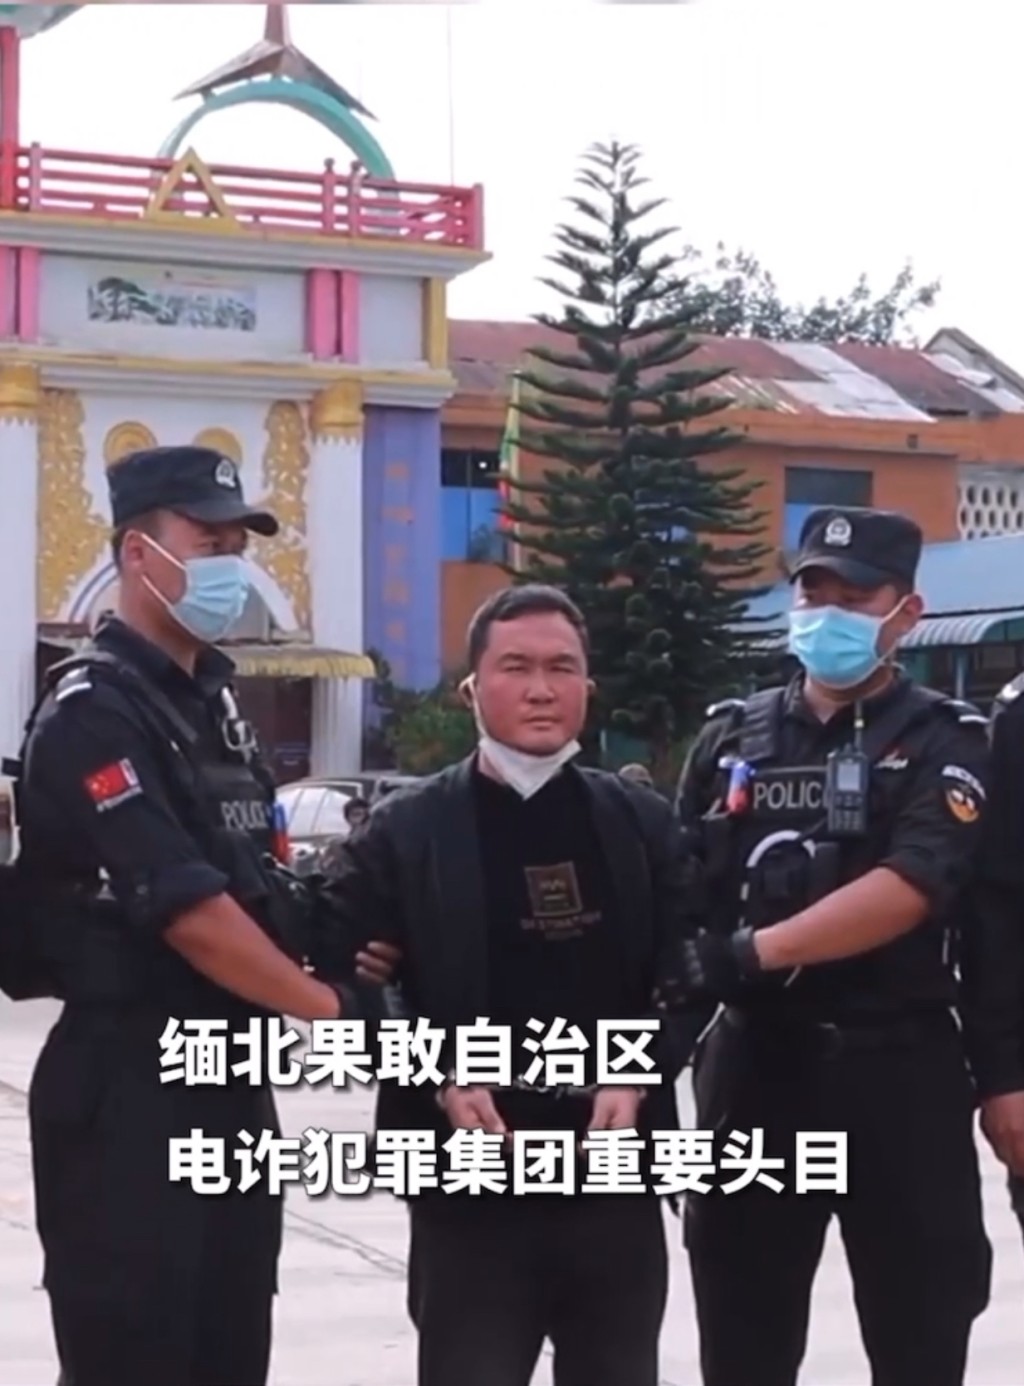 中國特警接收明國平。 央視影片截圖